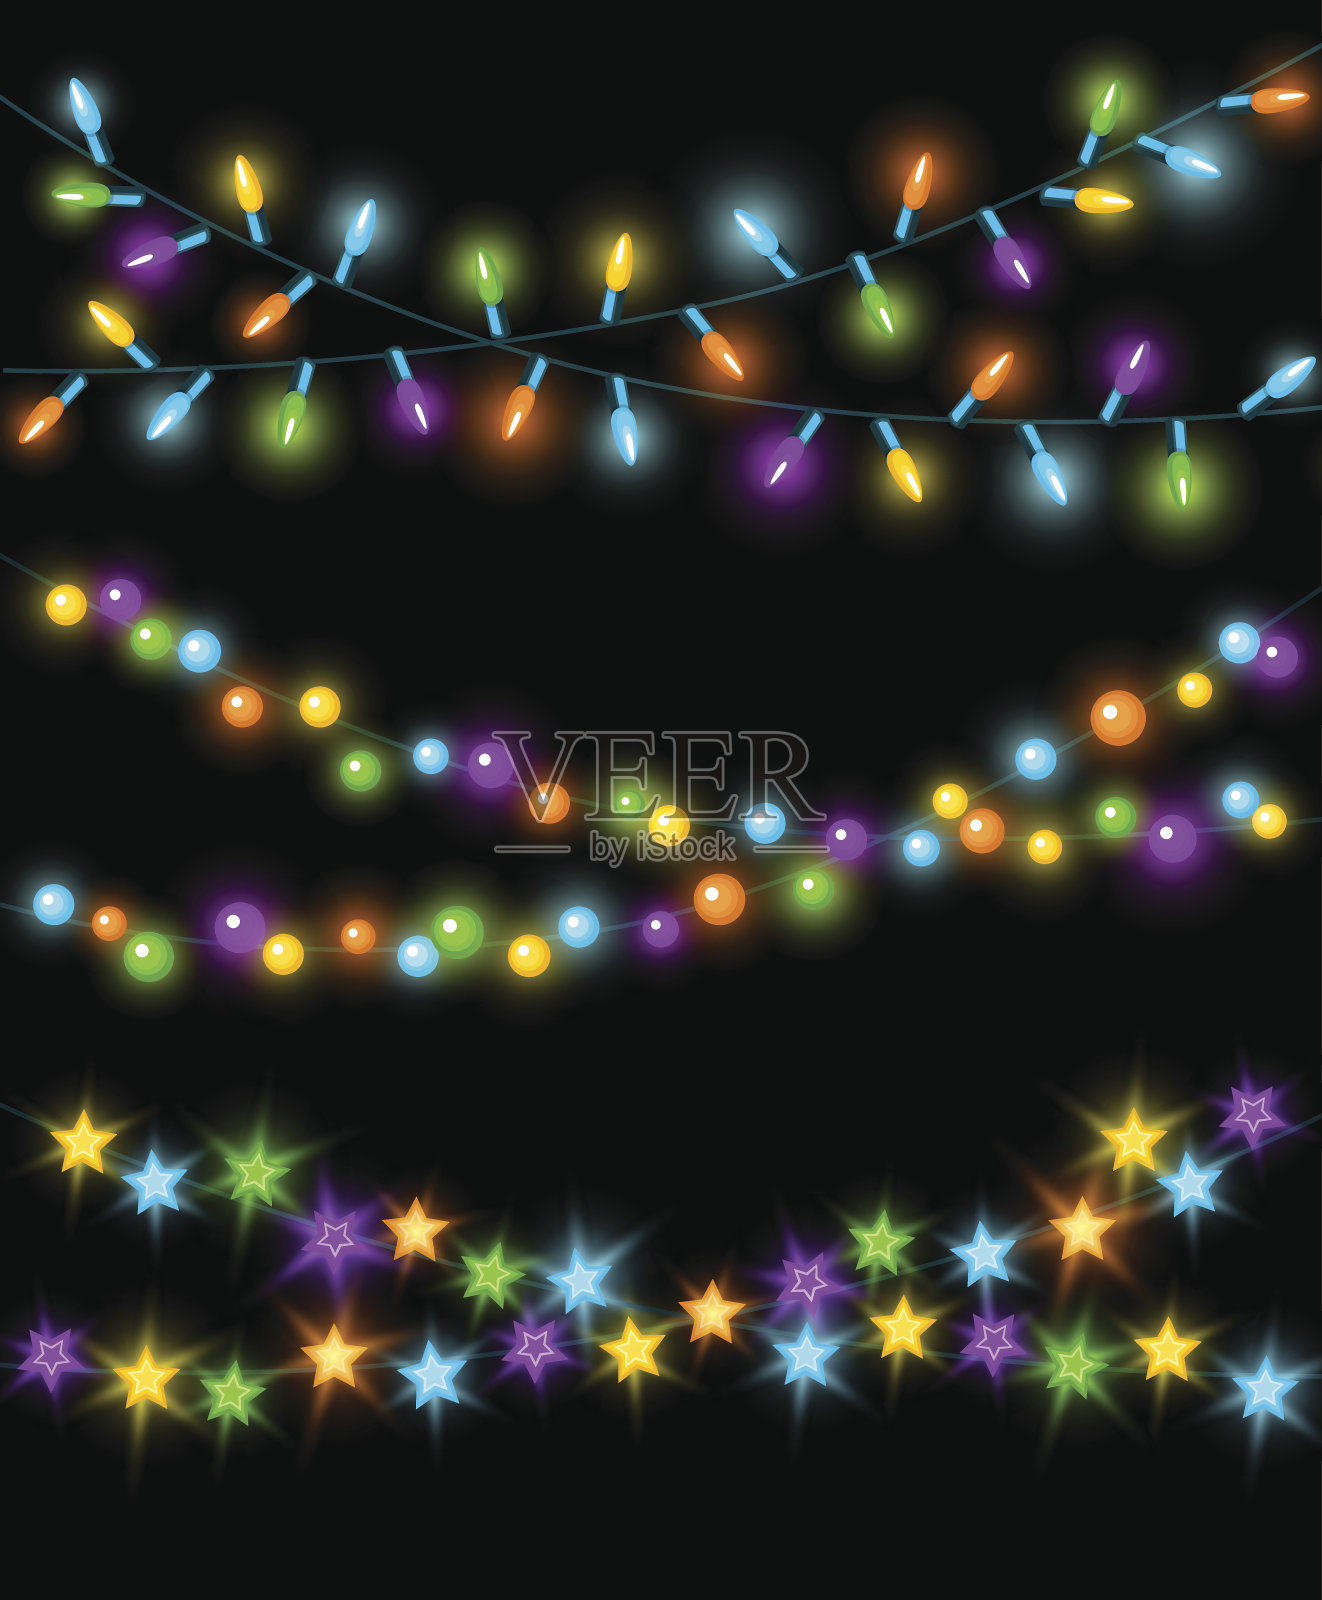 庆祝圣诞节、新年生日等活动时，发光的五颜六色的led灯泡、圆圈和星星、挂花环的背景插画图片素材